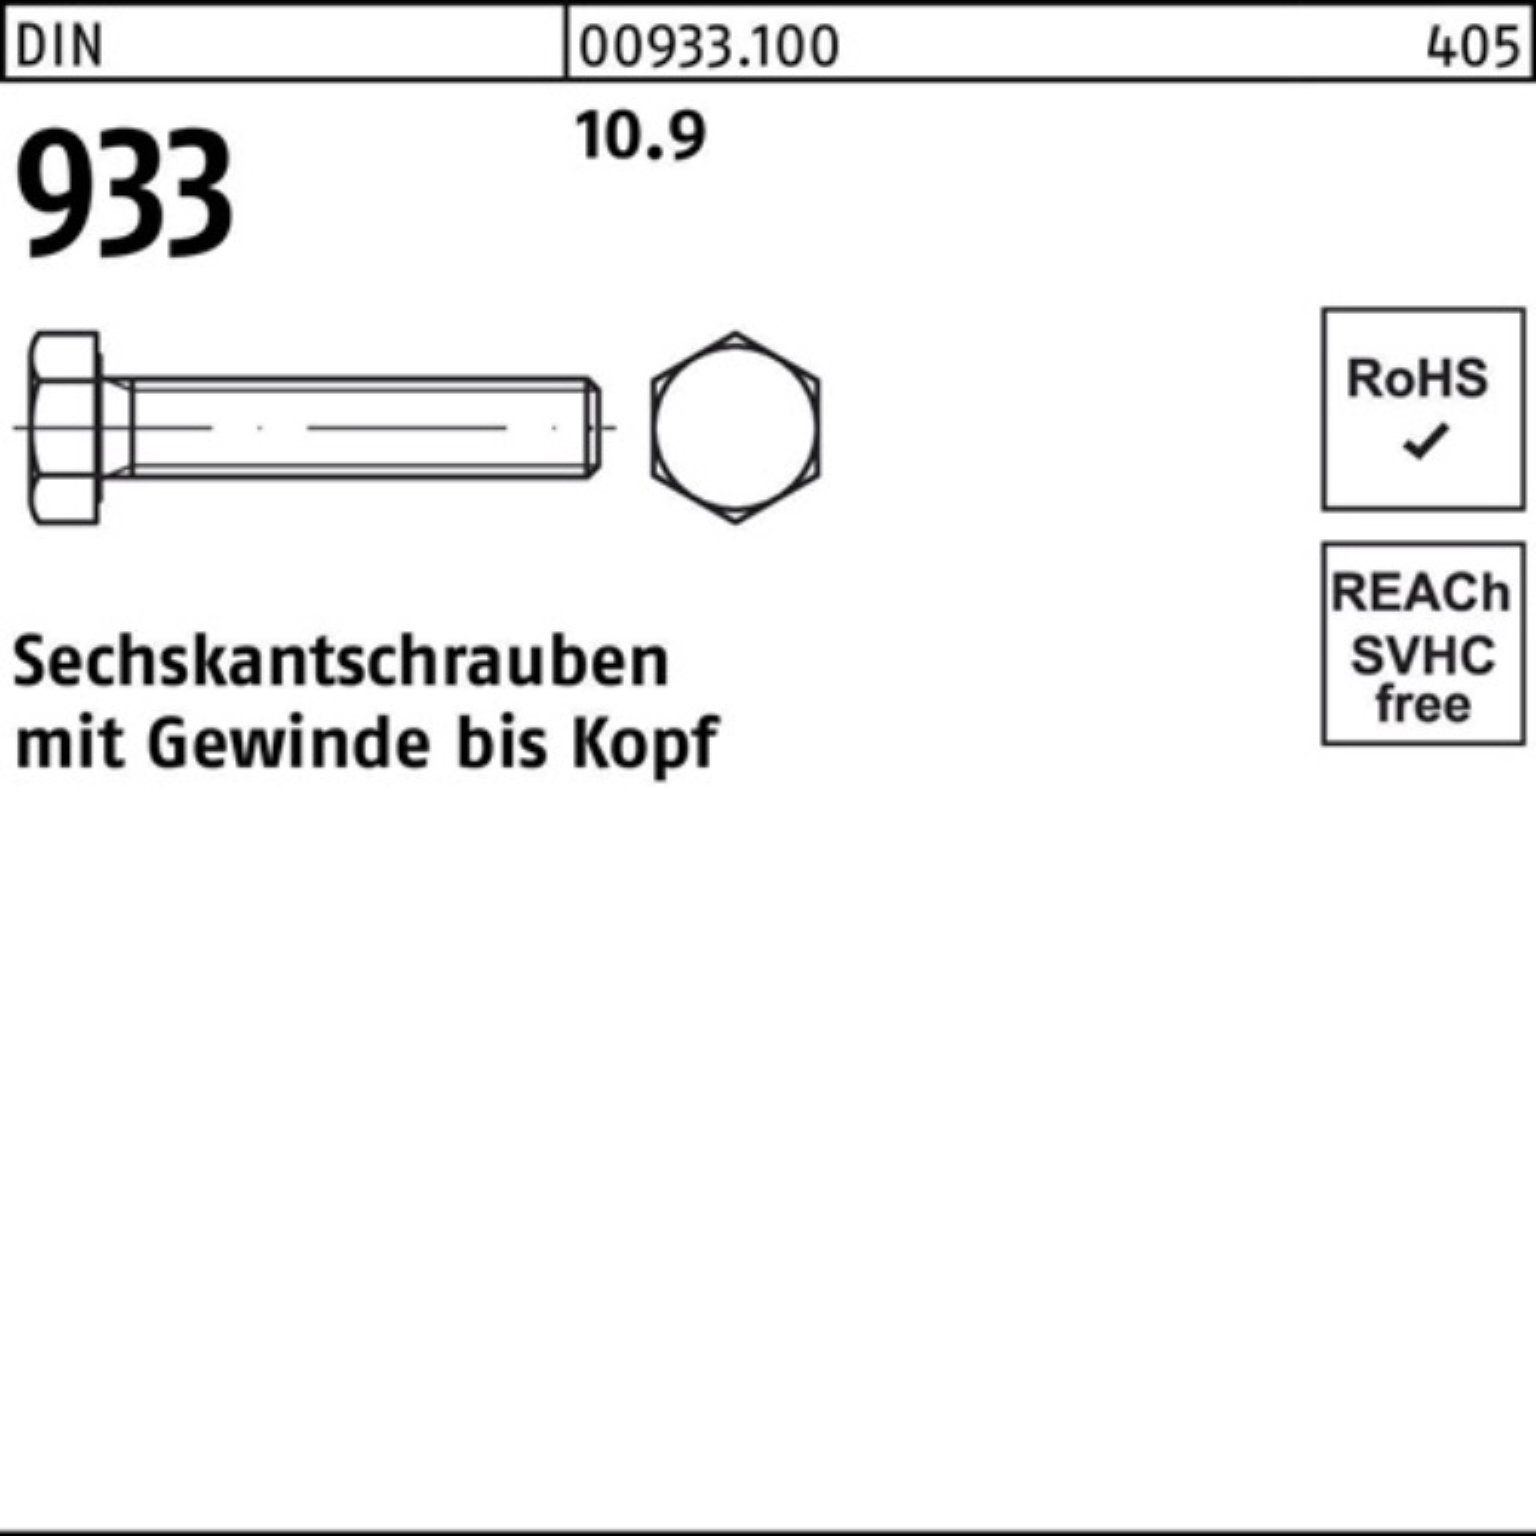 Reyher Sechskantschraube 200er Pack 933 200 Stück 75 Sechskantschraube M8x 10.9 DIN 933 DIN VG